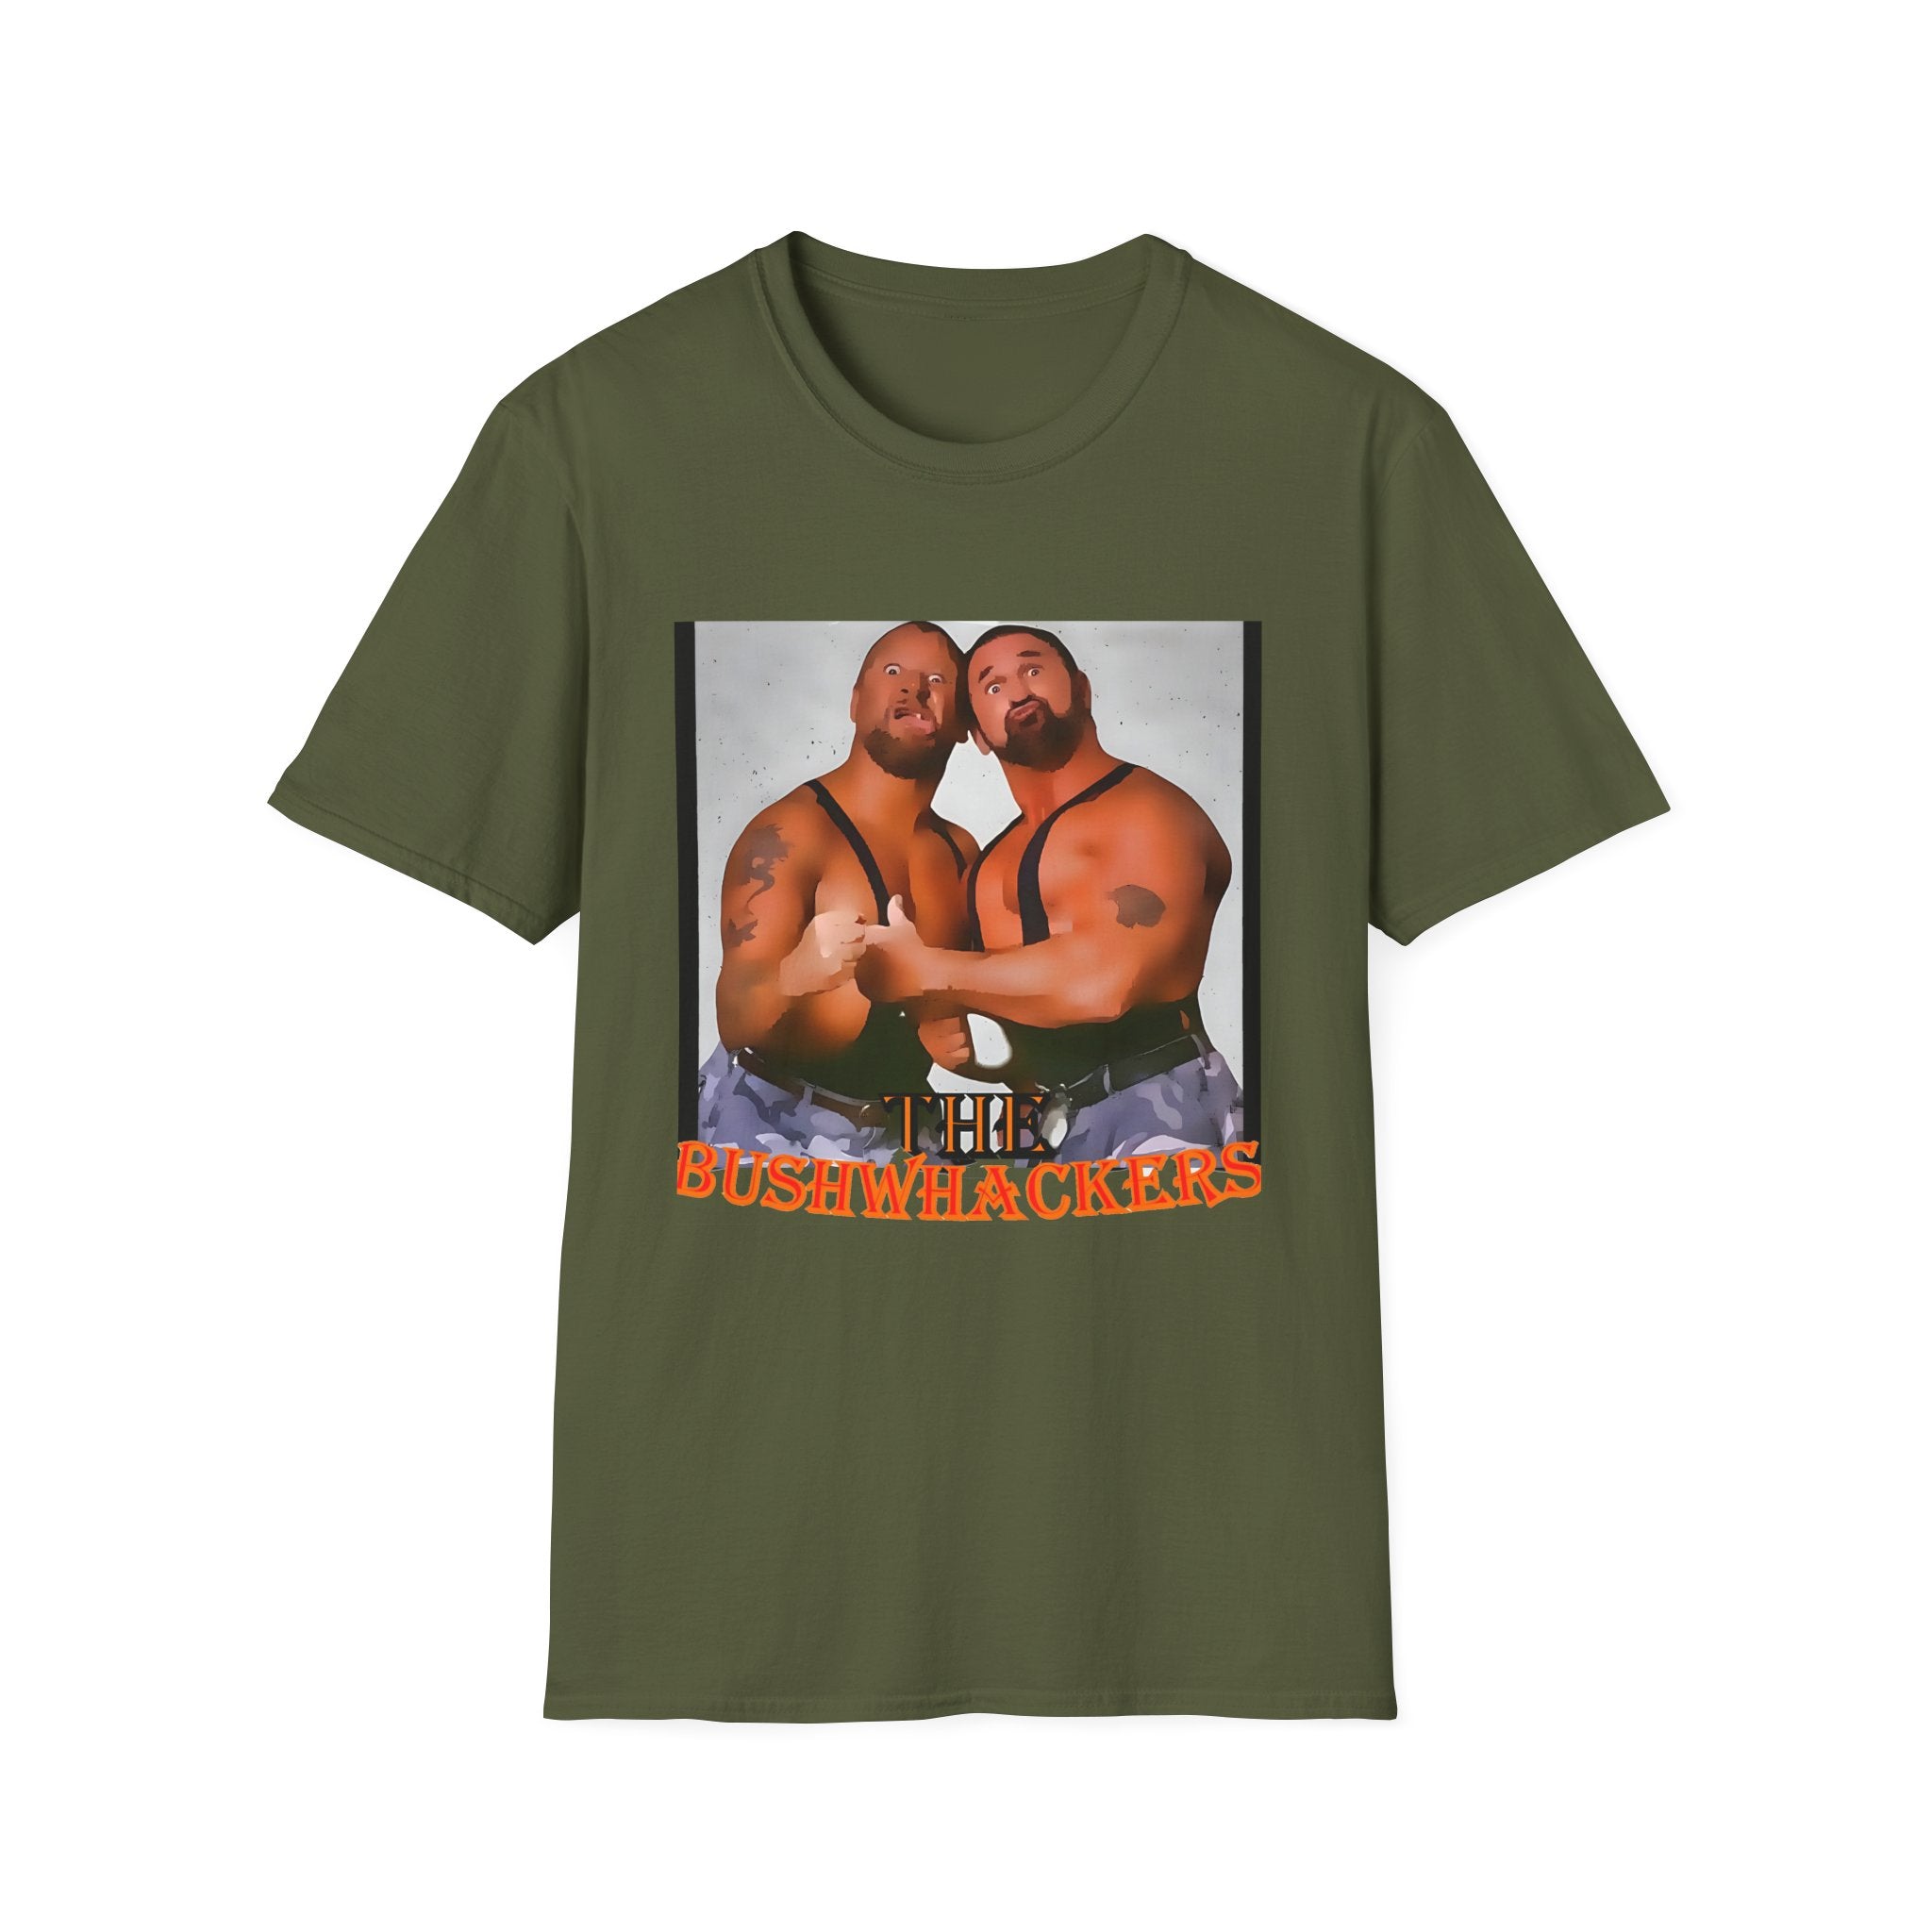 The Bushwhackers T-Shirt